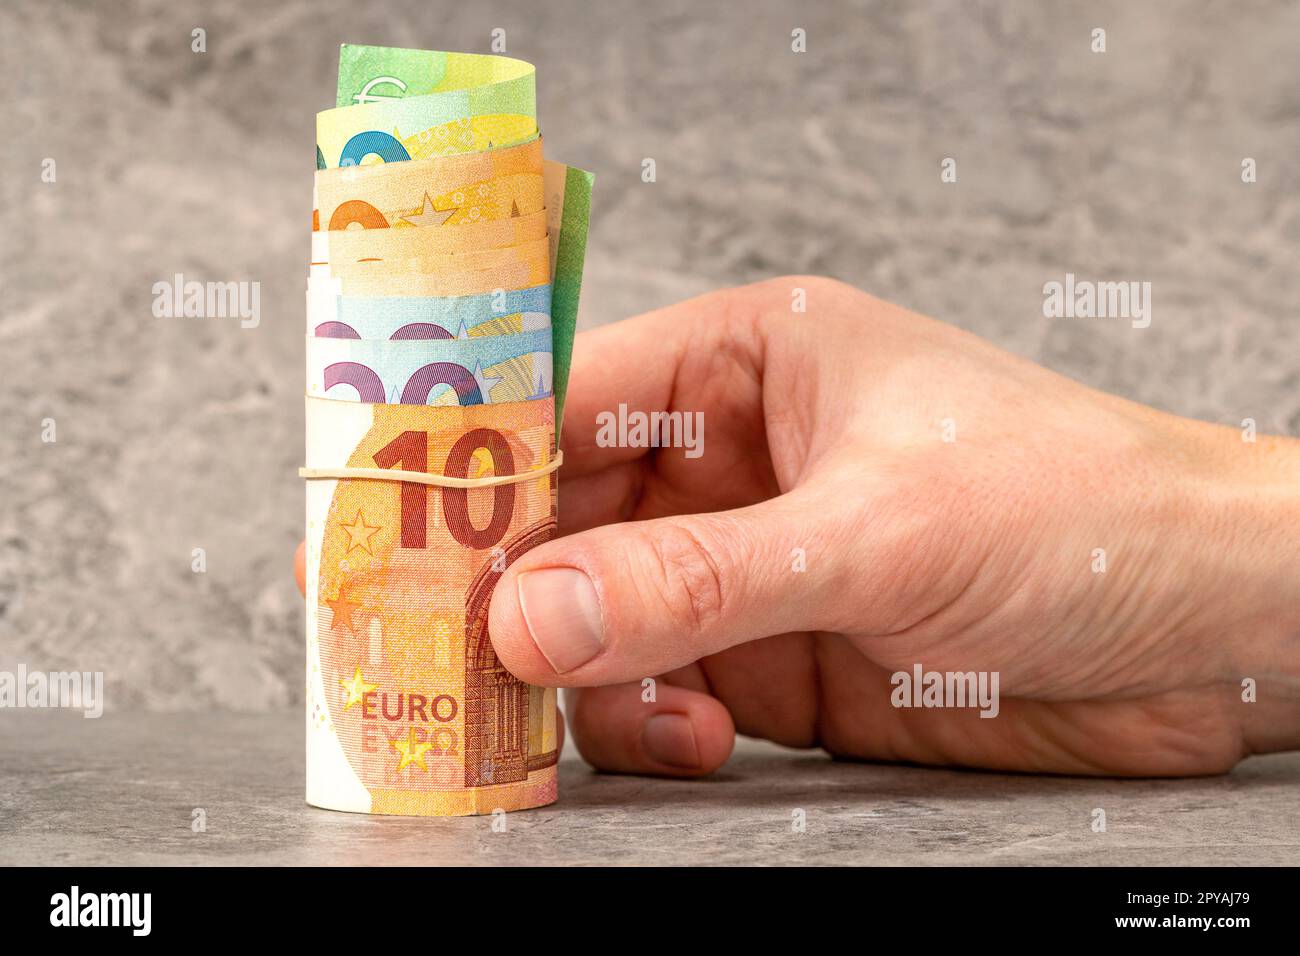 Handgehaltene Rolle von Euro-Banknoten mit einem Gummiband Stockfoto